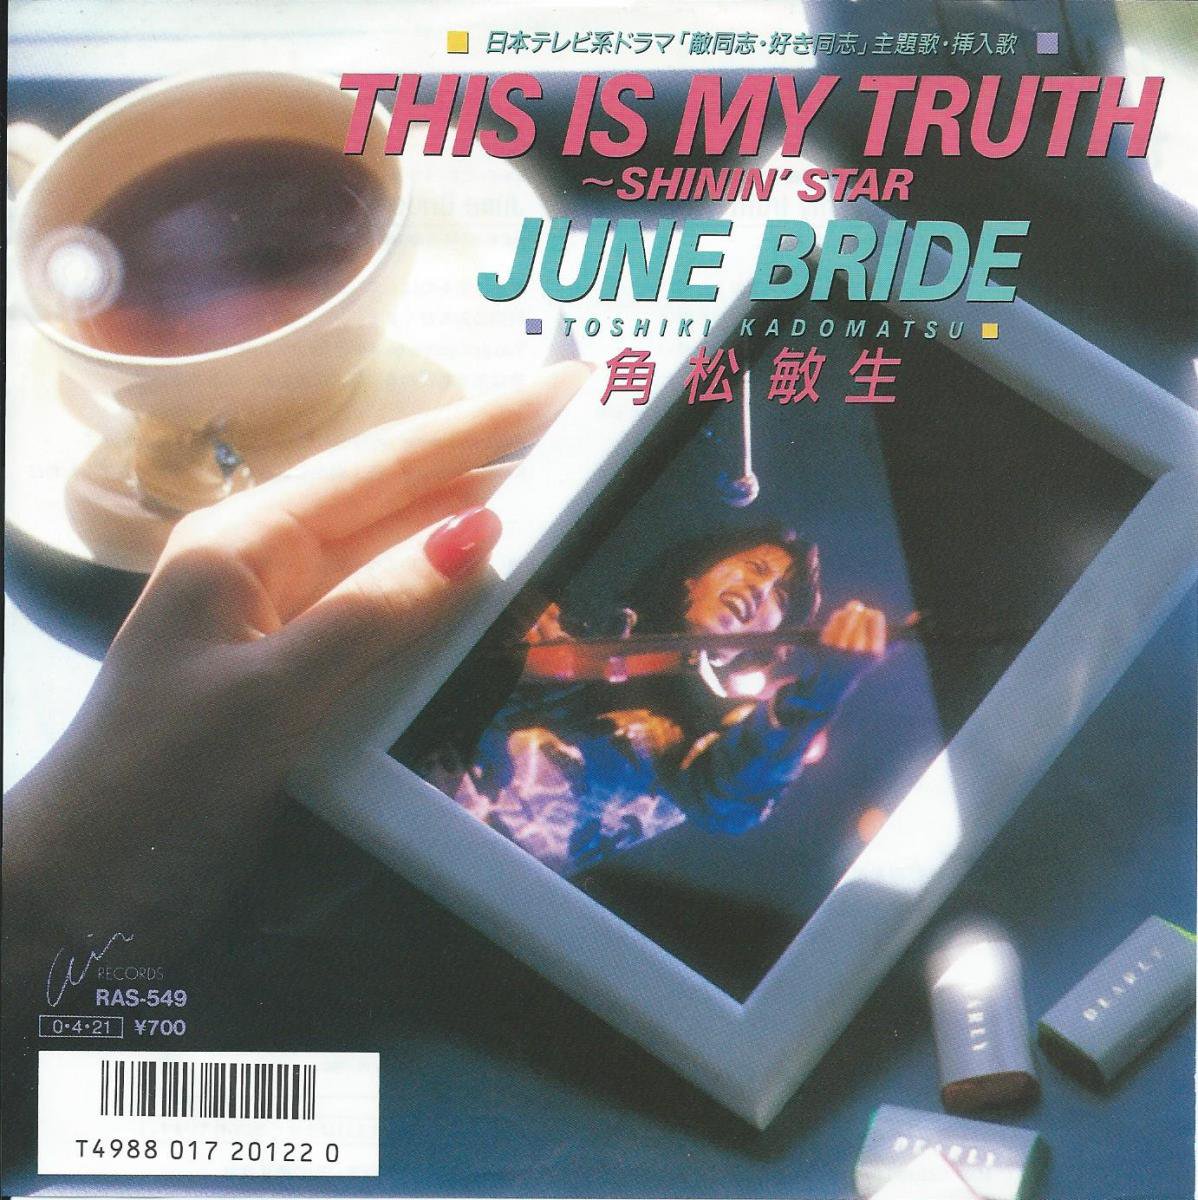 角松敏生 TOSHIKI KADOMATSU / THIS IS MY TRUTH 〜SHININ' STAR〜 / JUNE BRIDE (7